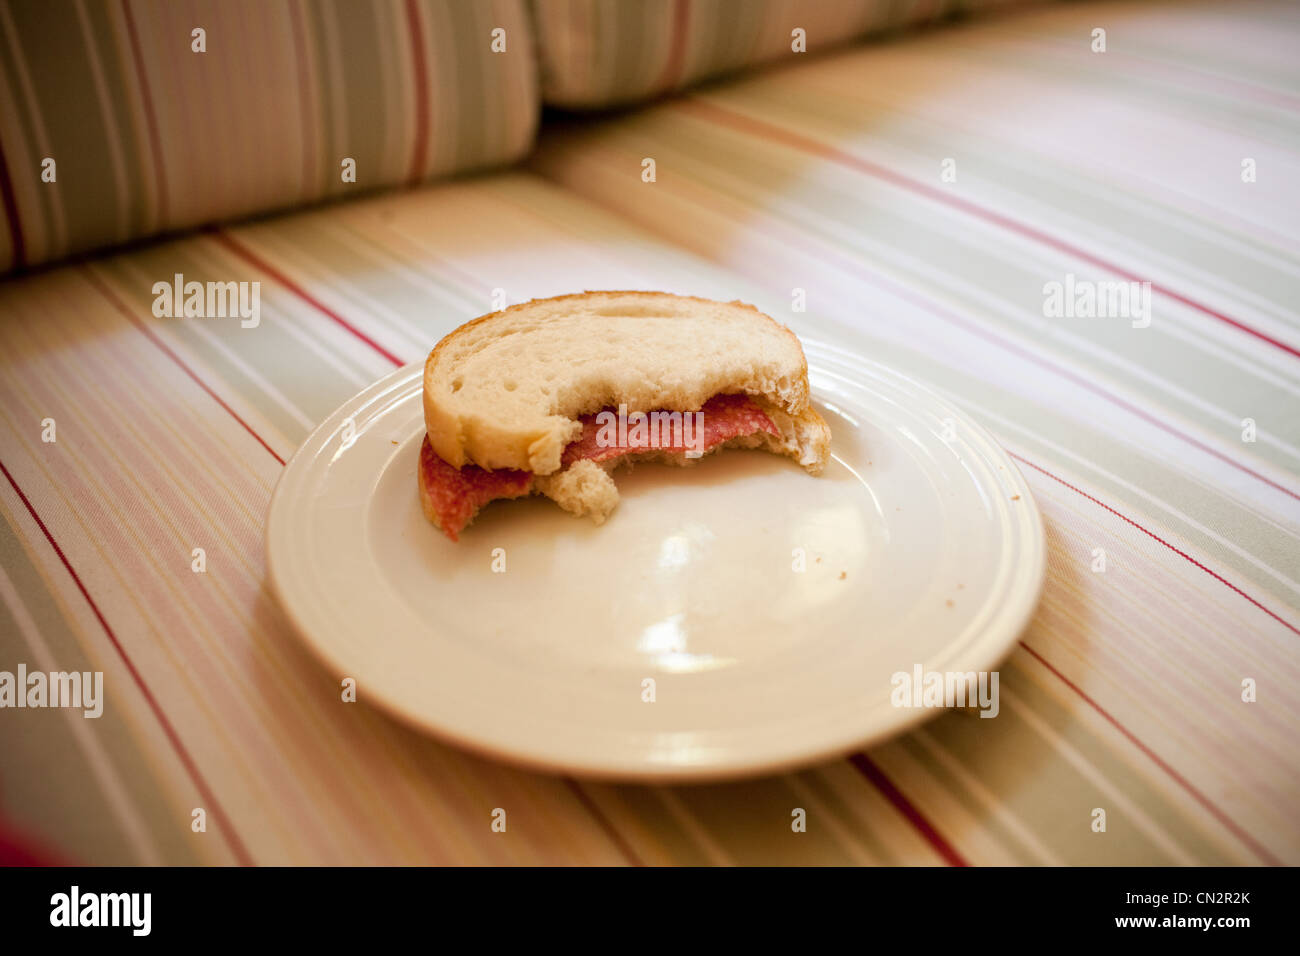 Half eaten sandwich on plate Stock Photo